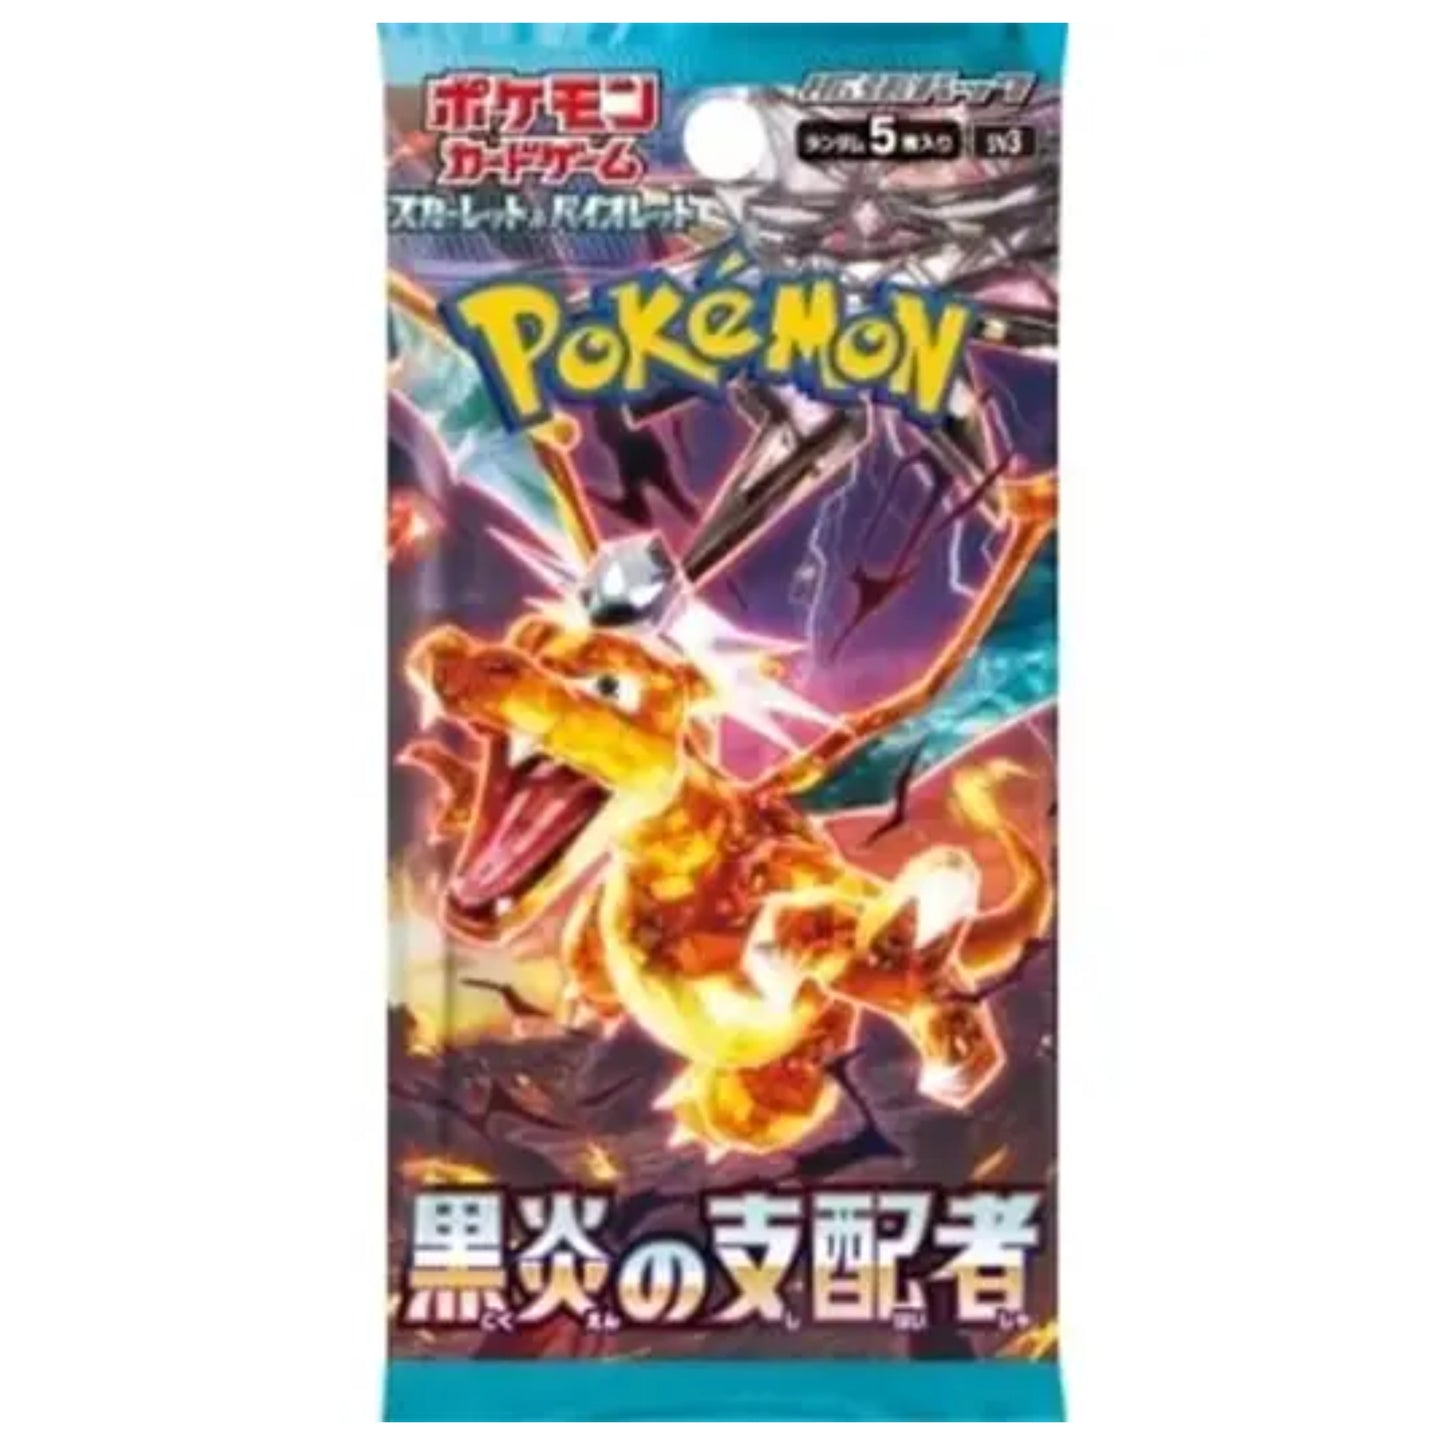 Pokémon Card Game Scarlet & Violet Expansion Pack Ruler of the Black Flame PACK